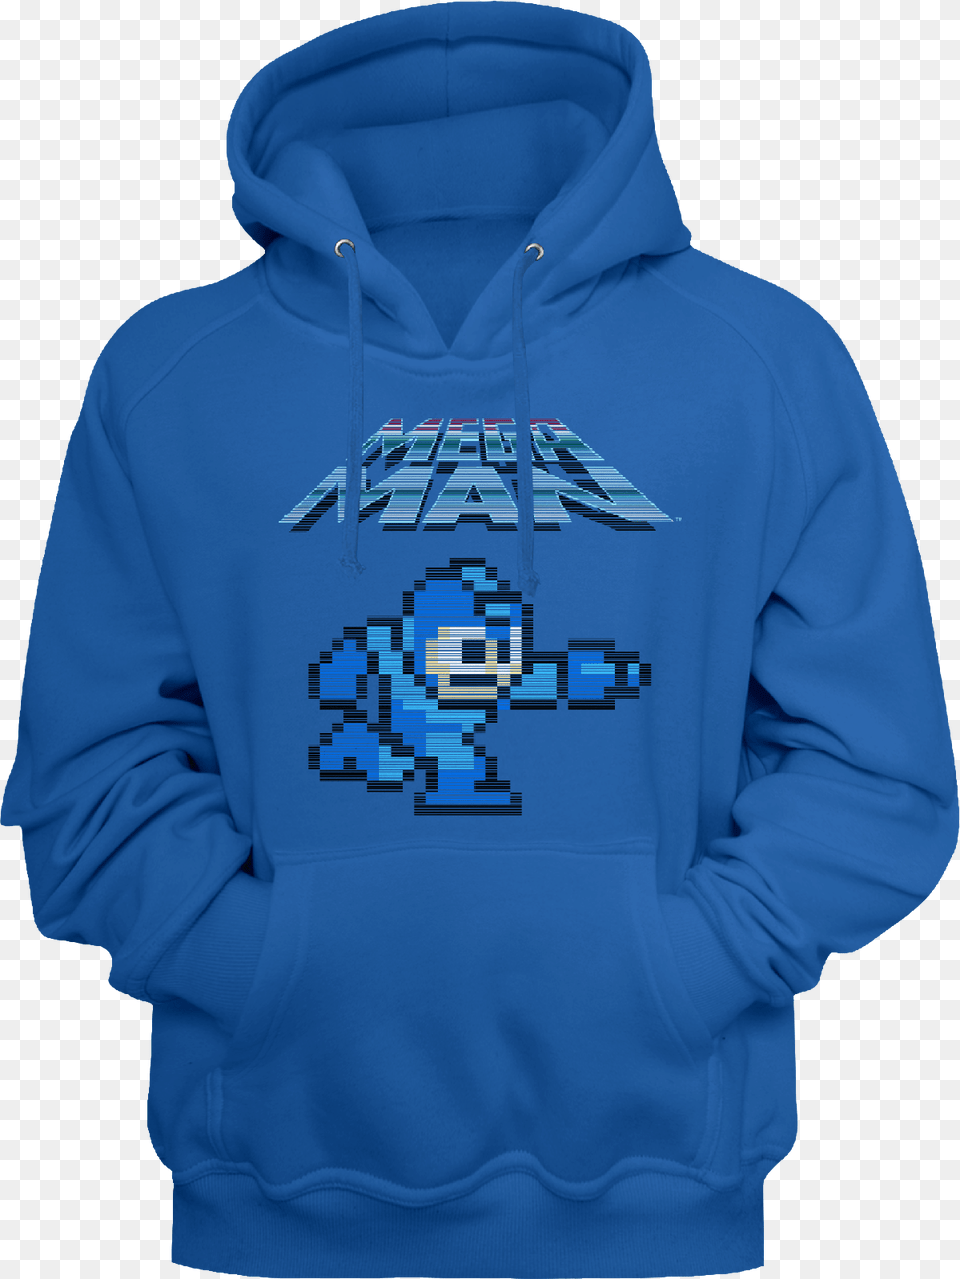 Mega Man Hoodie Hoodie, Clothing, Knitwear, Sweater, Sweatshirt Png